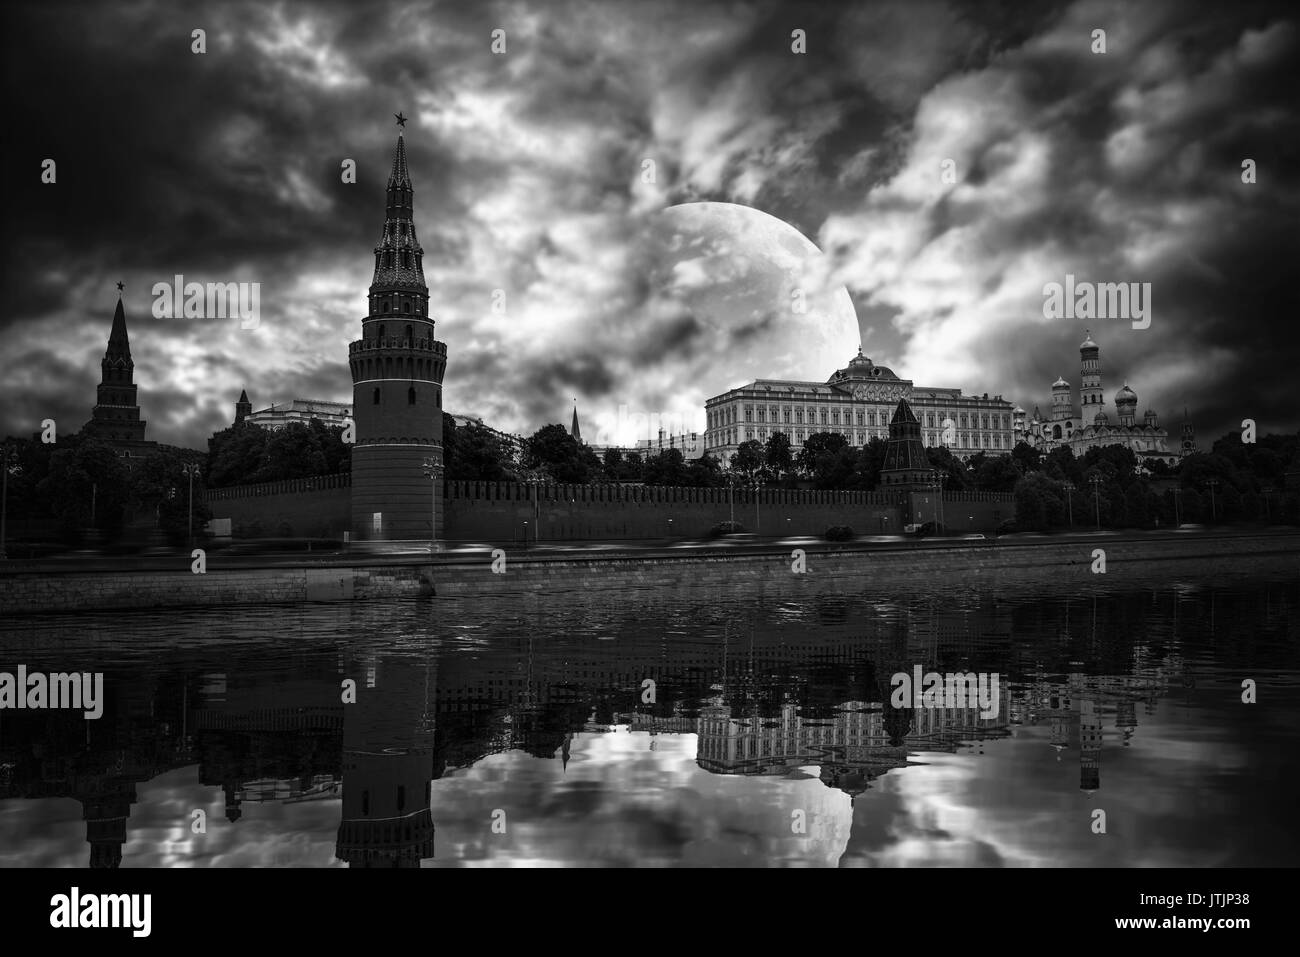 La place Rouge est le principal symbole de la Russie. Moscou. La nuit à la lumière de la lune. la photographie noir et blanc Banque D'Images